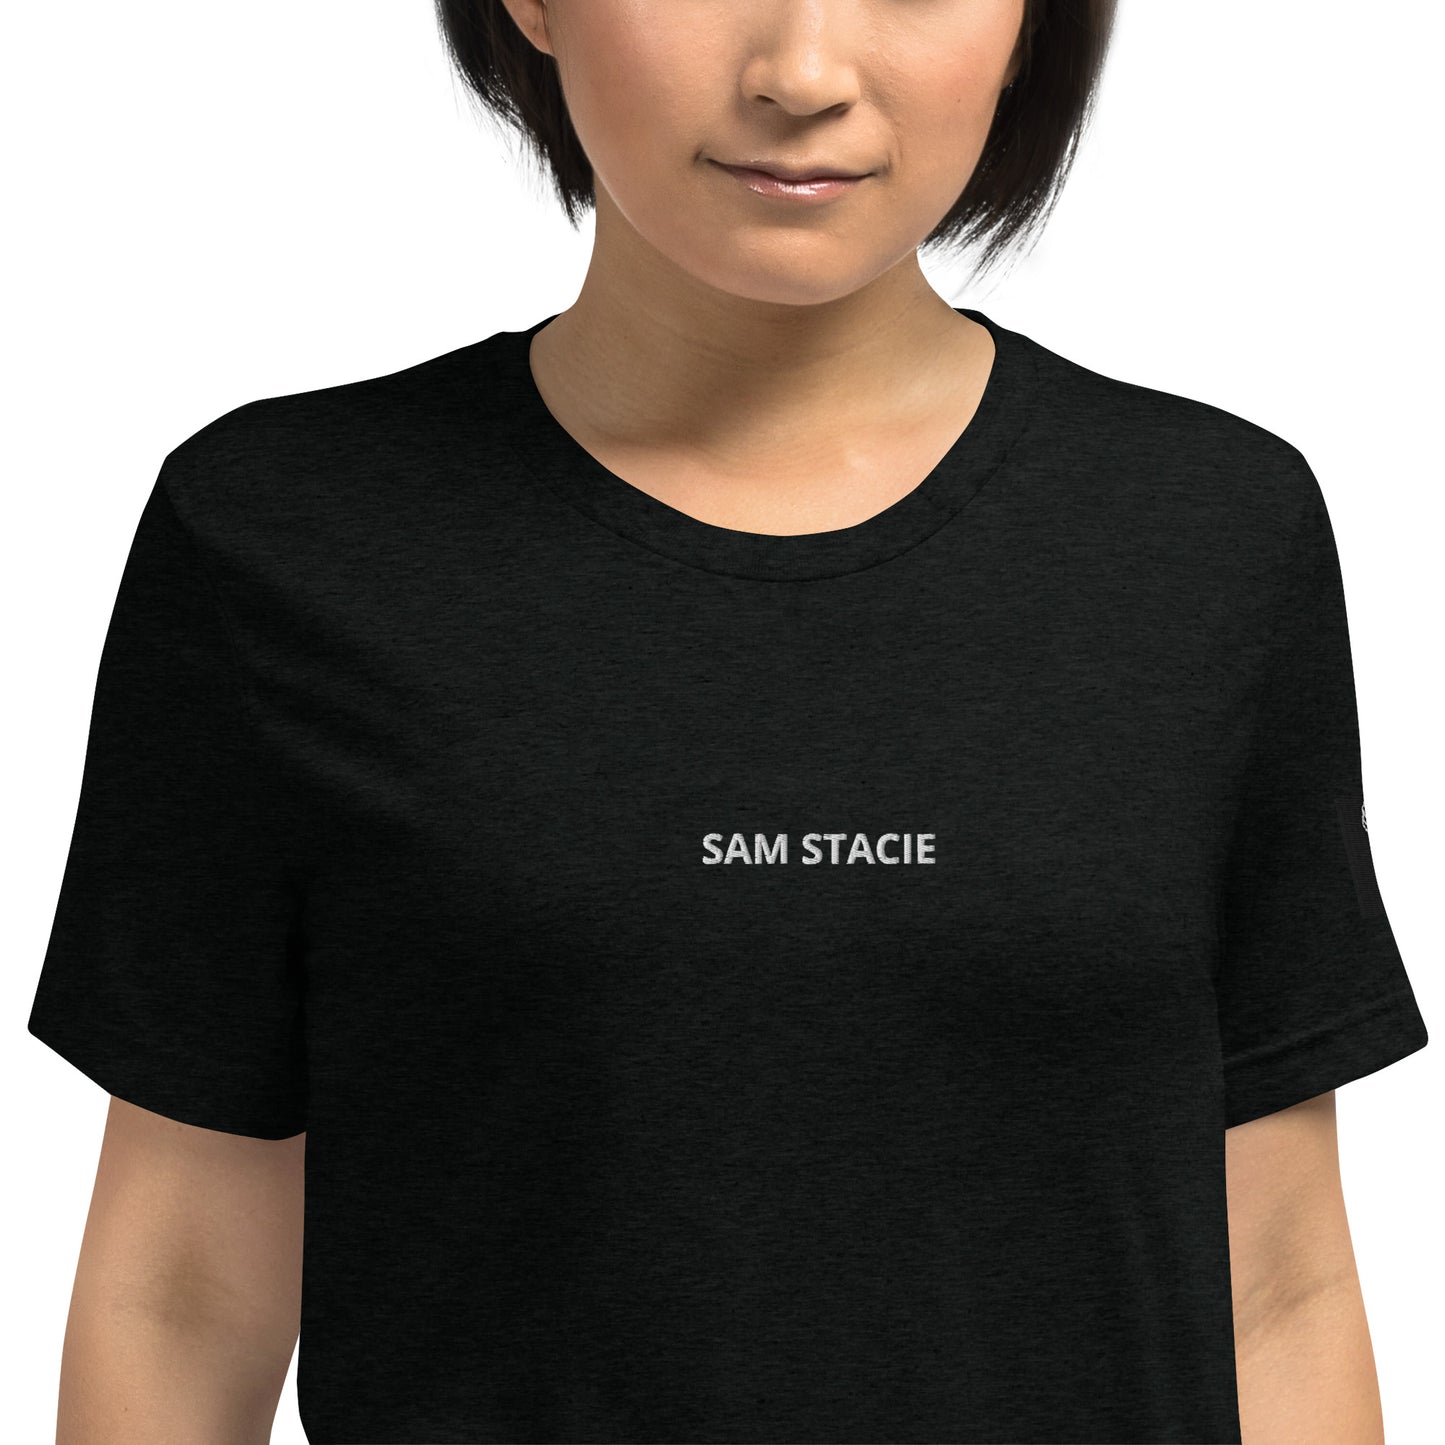 SAM STACIE Short sleeve t-shirt